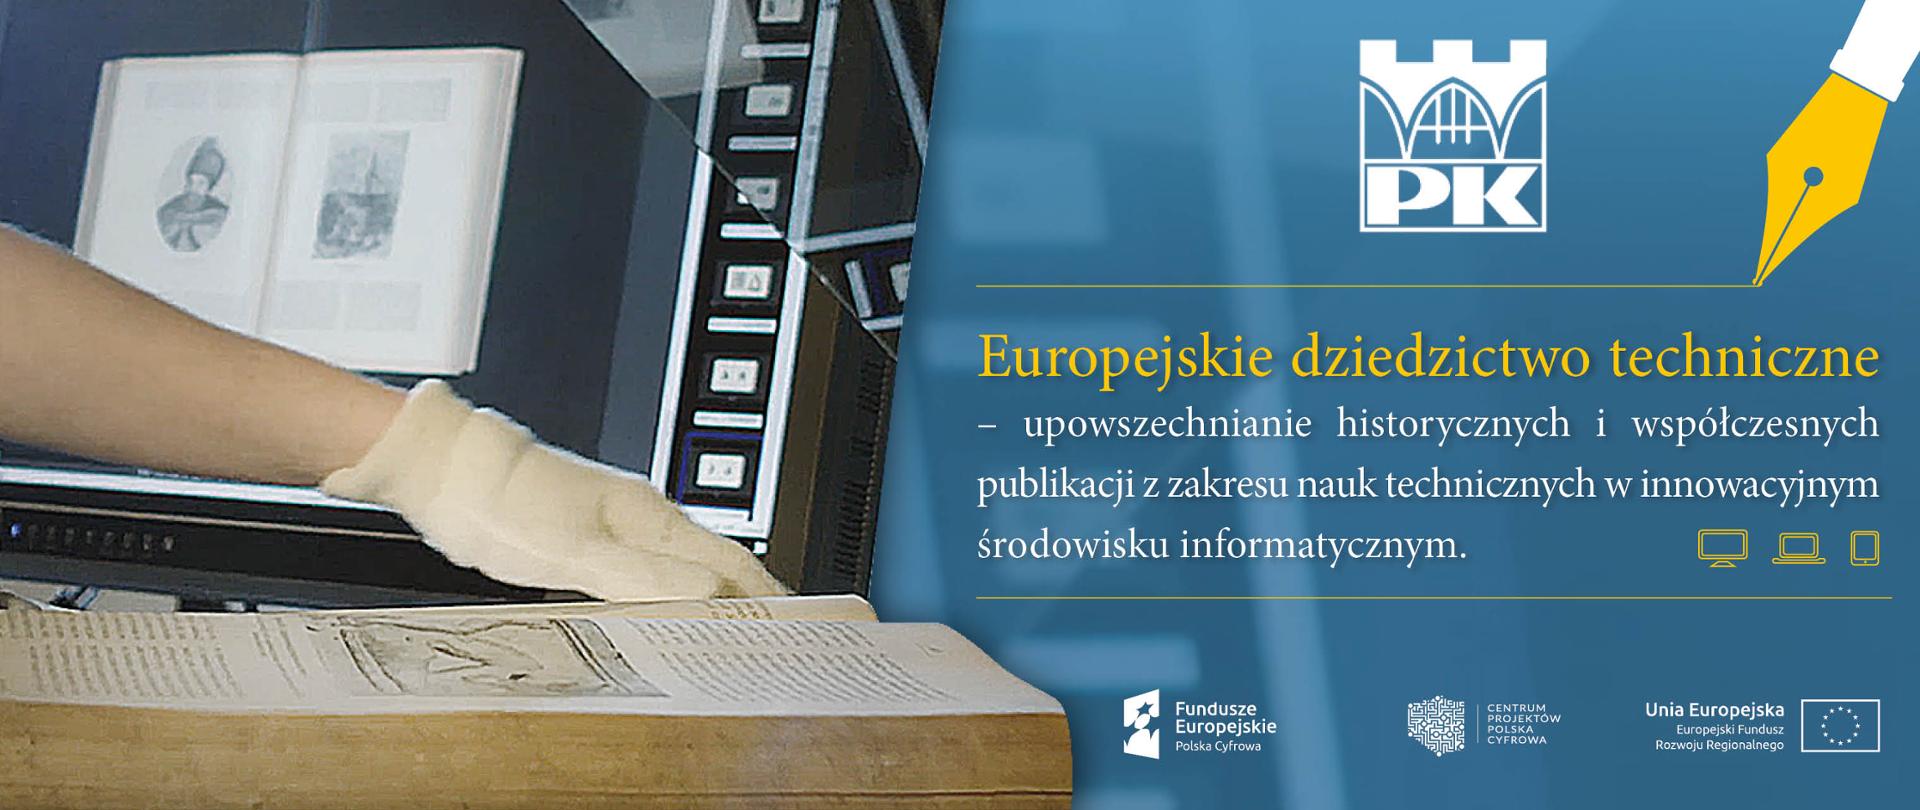 Europejskie dziedzictwo techniczne - upowszechnianie historycznych i współczesnych publikacji z zakresu nauk technicznych w innowacyjnym środowisku informatycznym